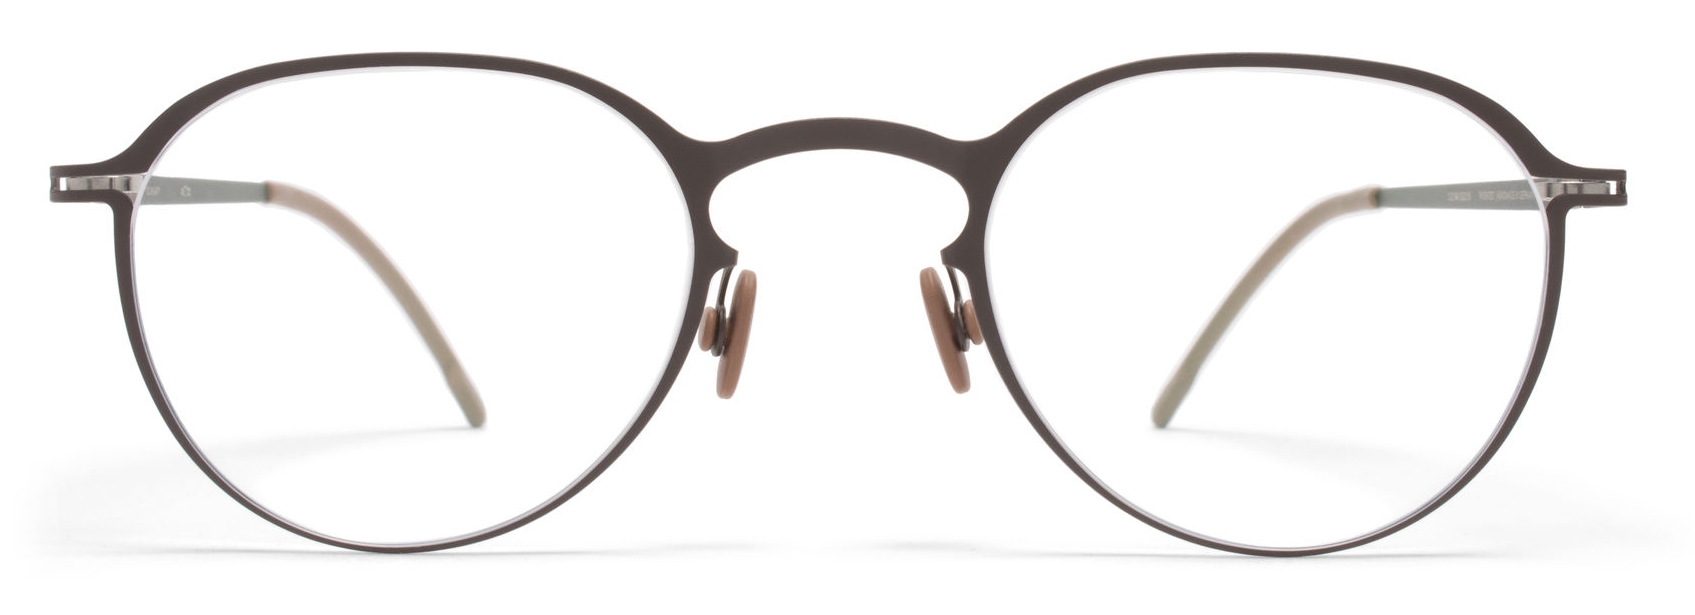 Mykita - Gunnar - Lite - Dark Brown - Metal Glasses - Optical ...